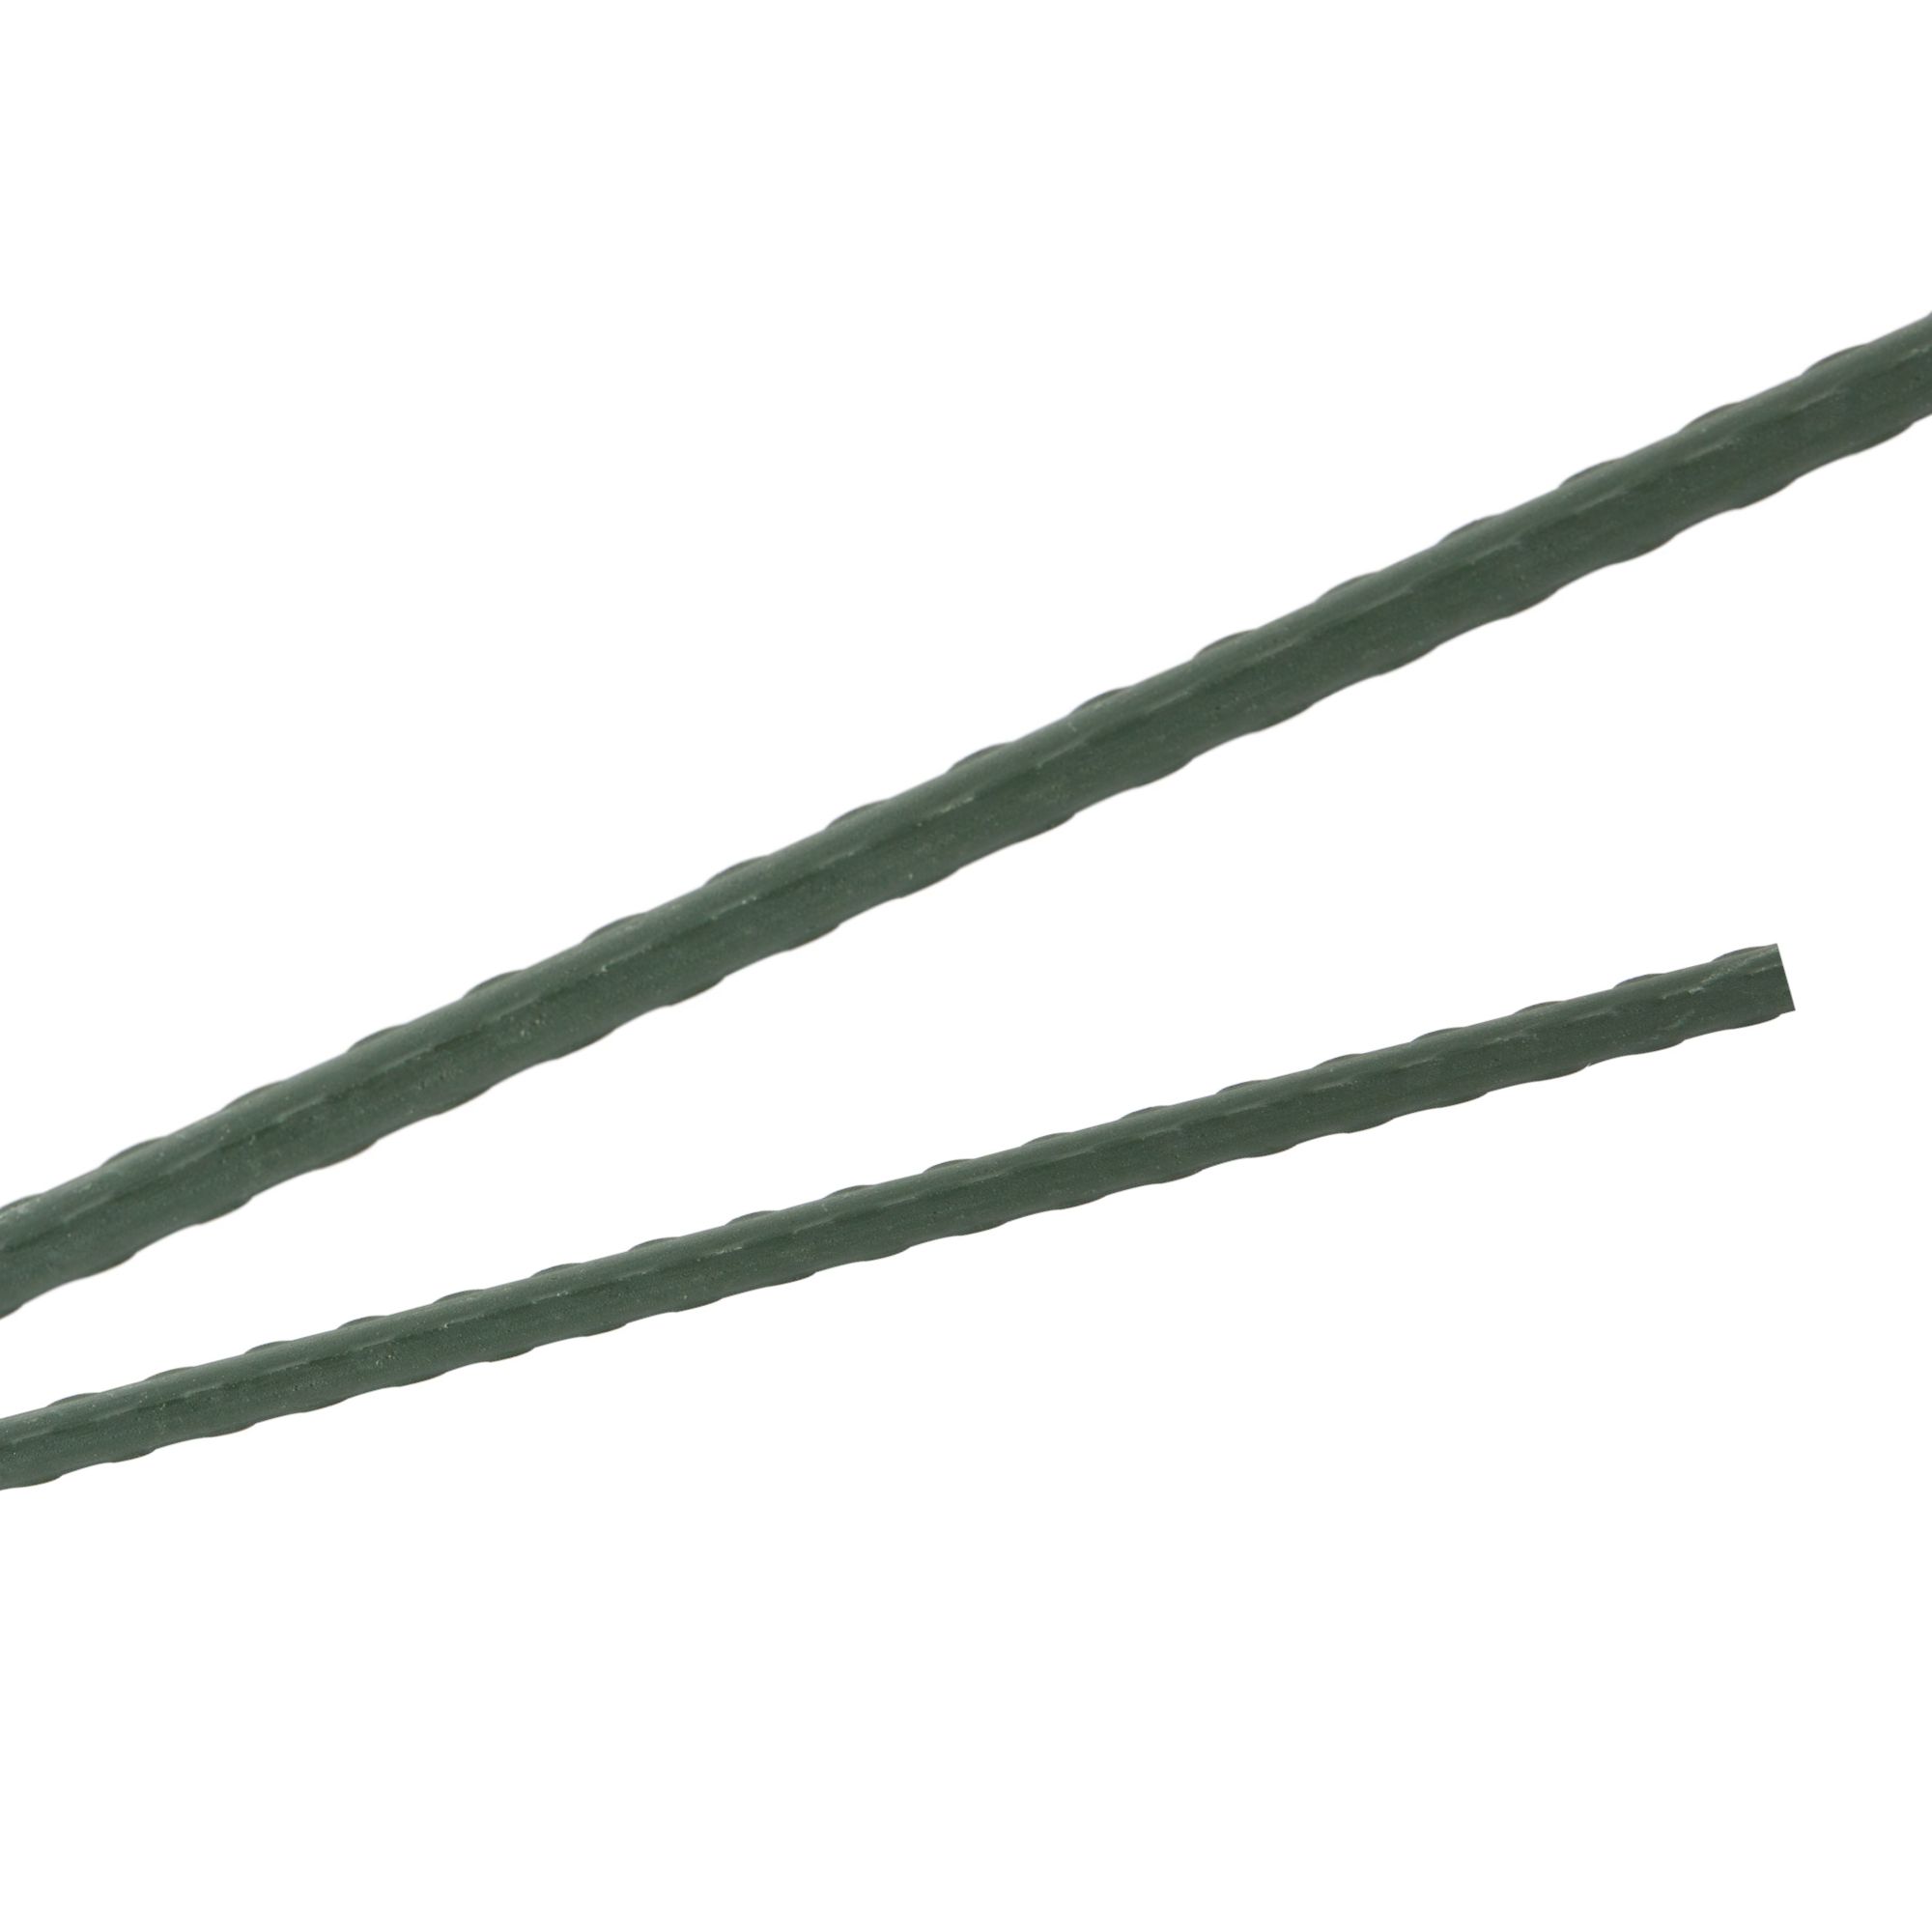 Tyč podpěrná, 8mm, 150cm, kov+PVC, zelená 0.090000 Kg GIGA Sklad20 211777 213